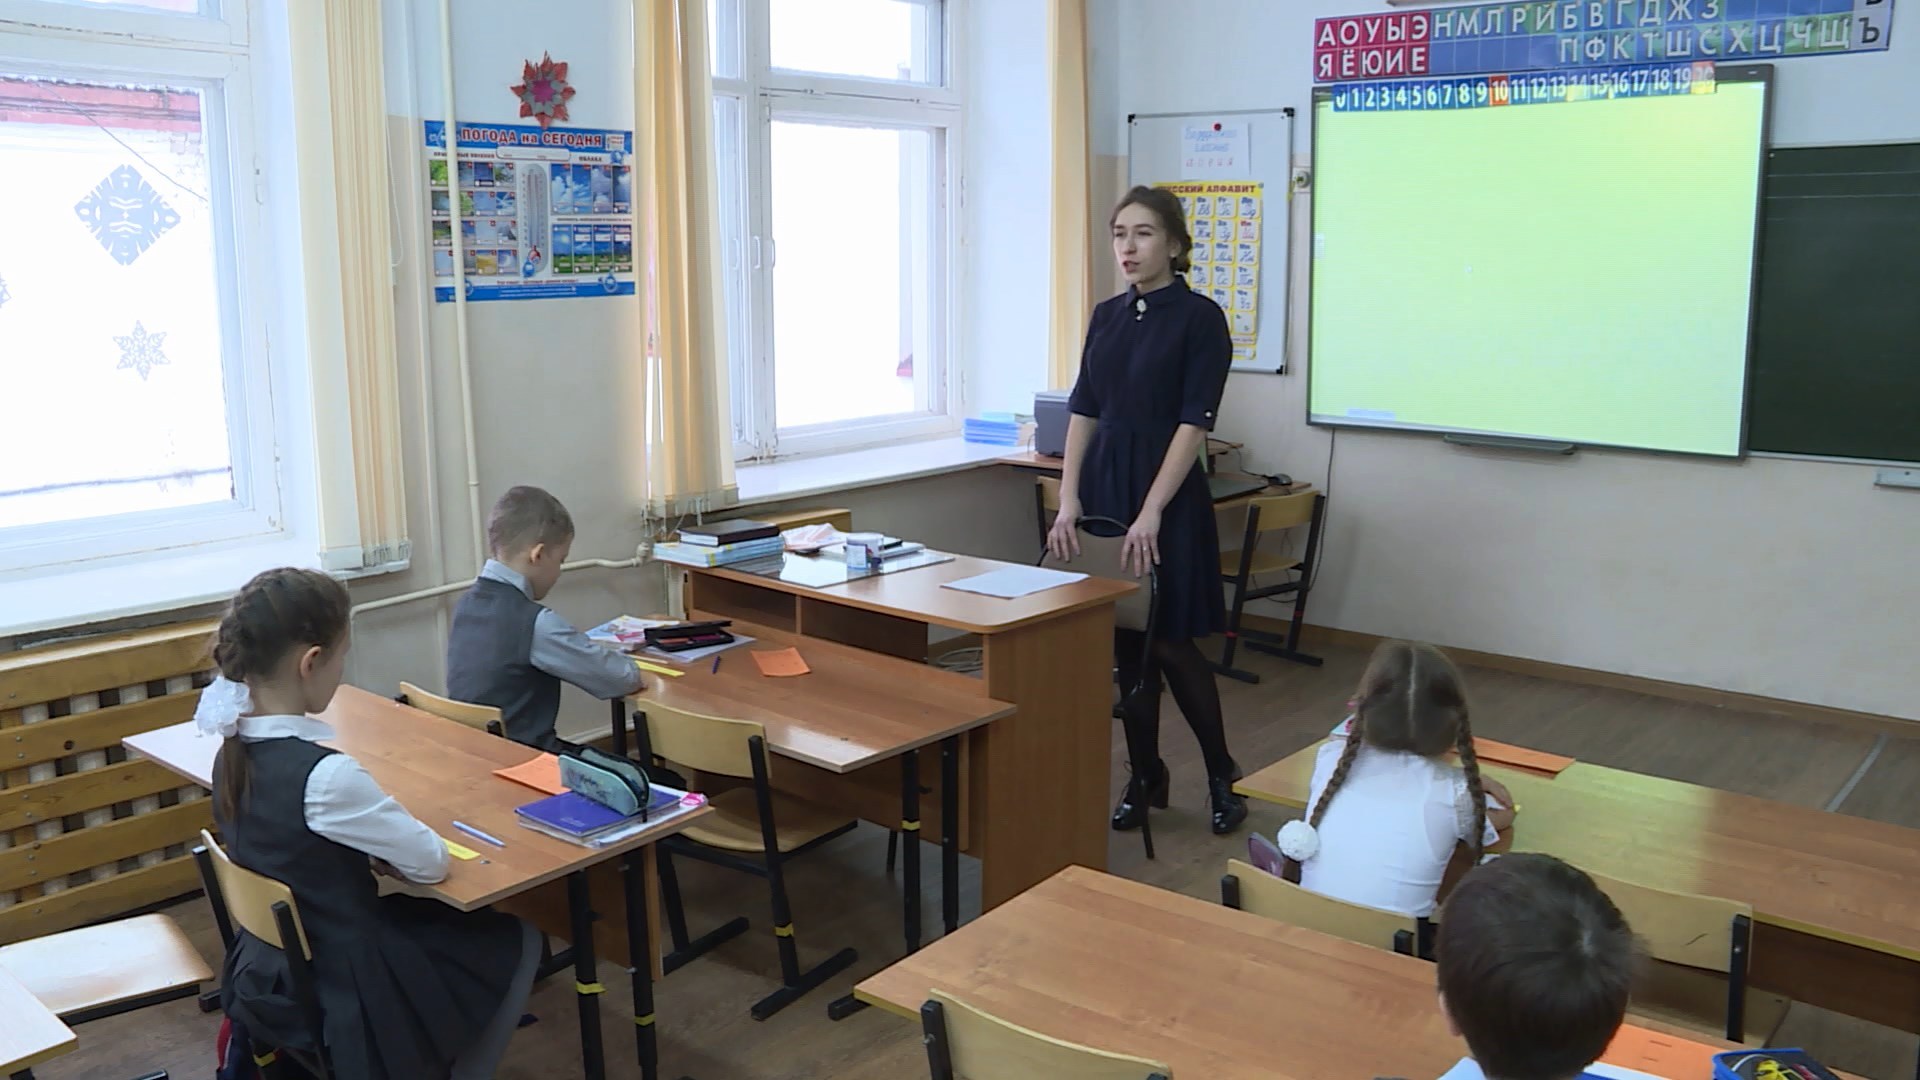 Учителей в костромские школы будут зазывать жильём и деньгами